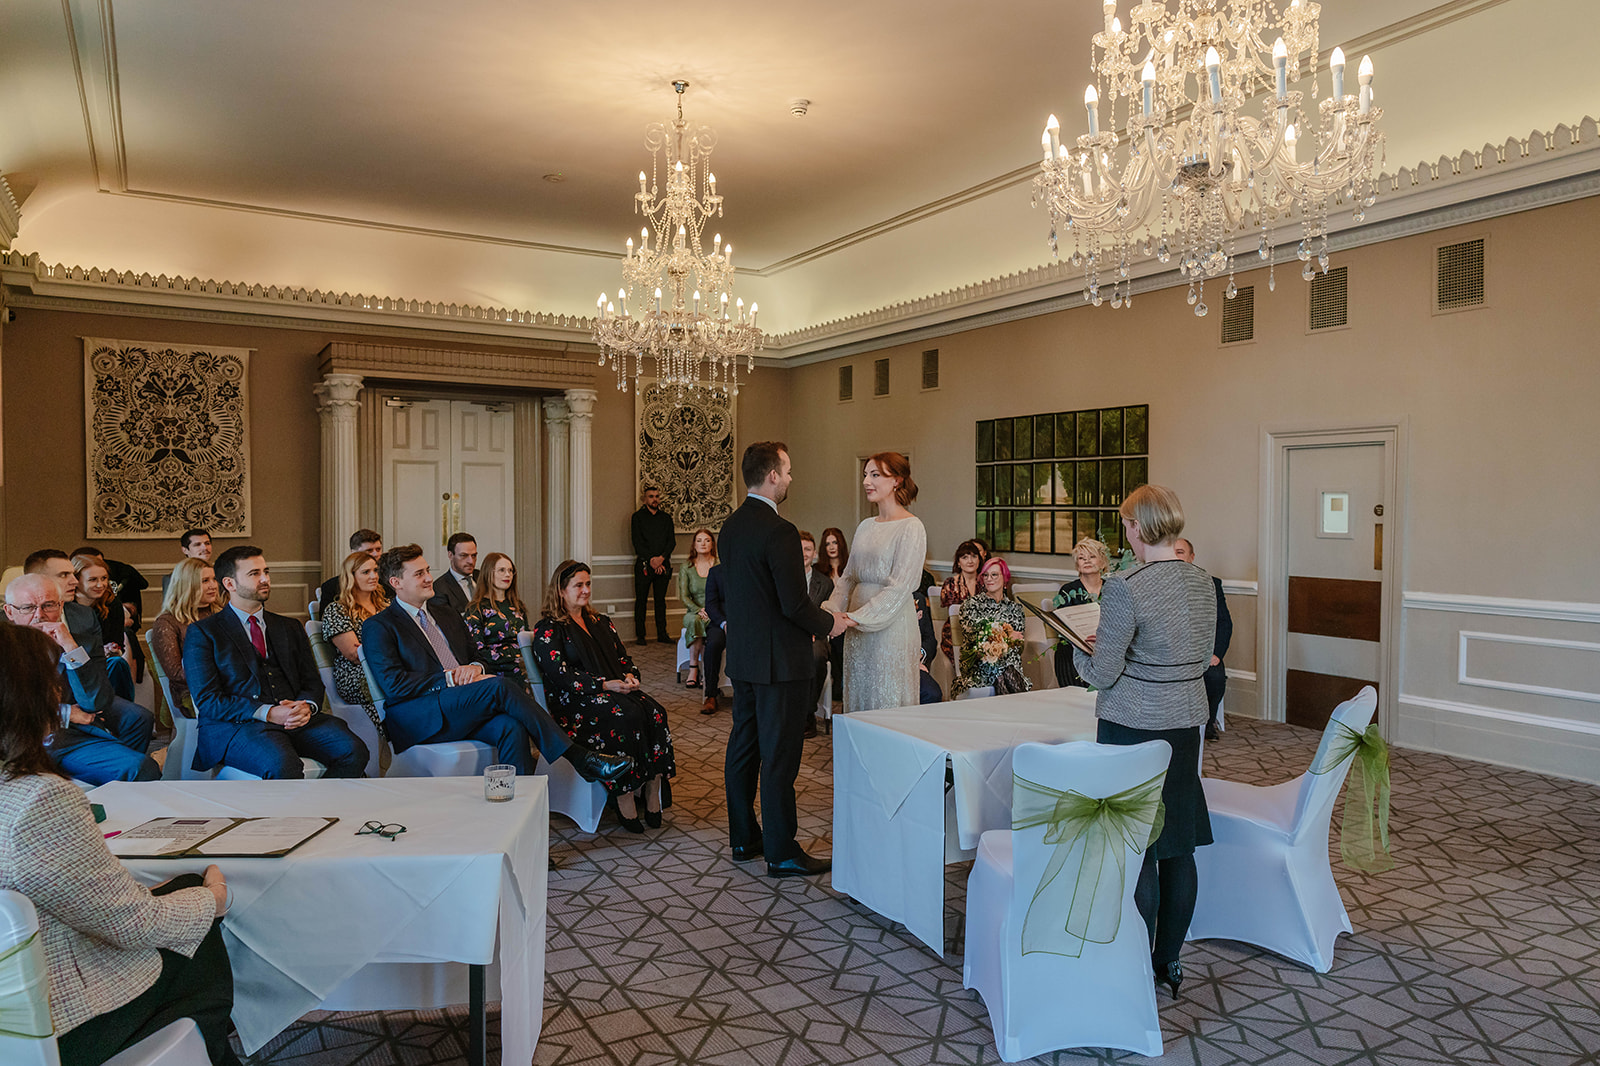 Zara Davis Wedding Photography Cotswolds Gloucestershire Cheltenham whole ceremony room